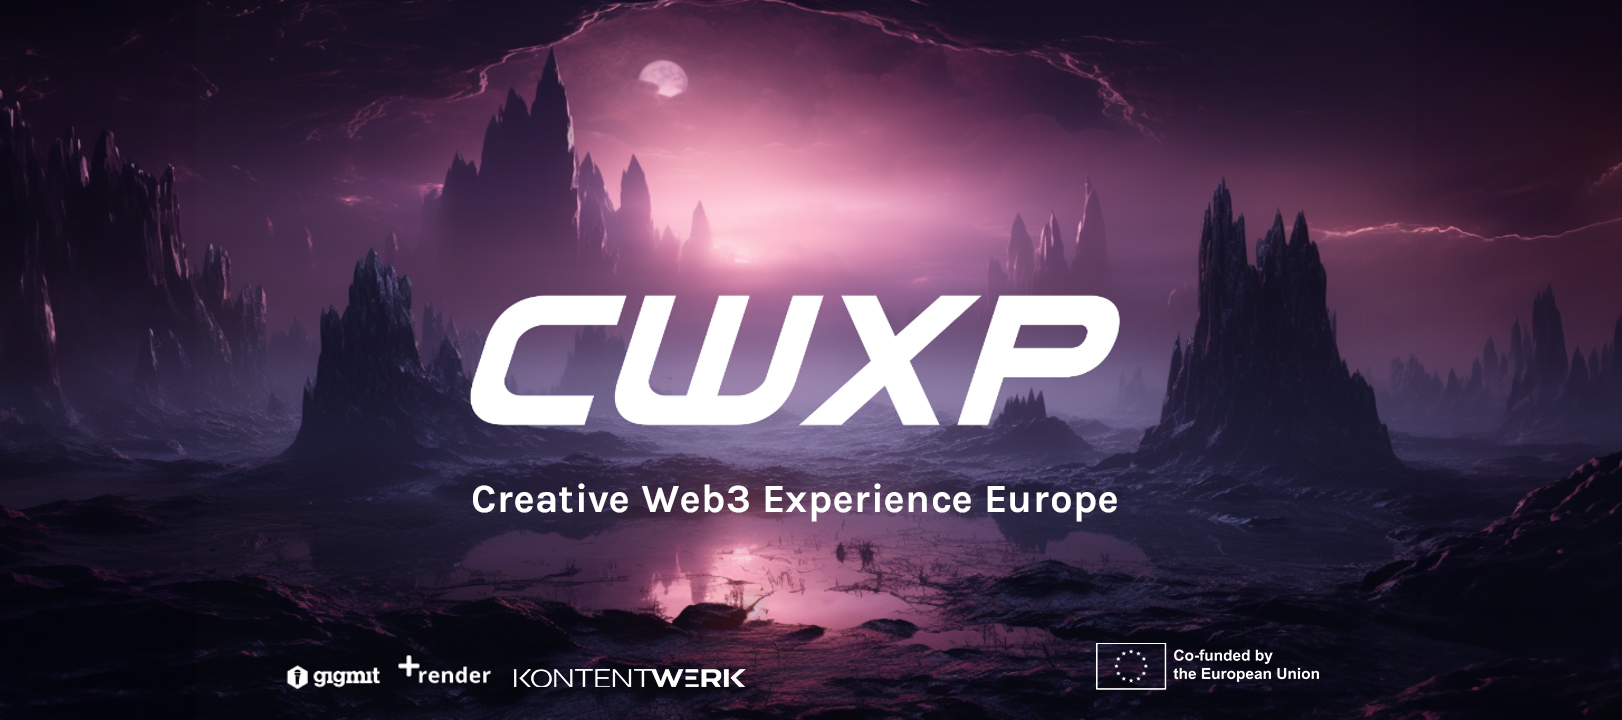 Creative Web3 Experience Europe ( CWXP), Kontentwerk GmbH gefördert der Europäischen Union